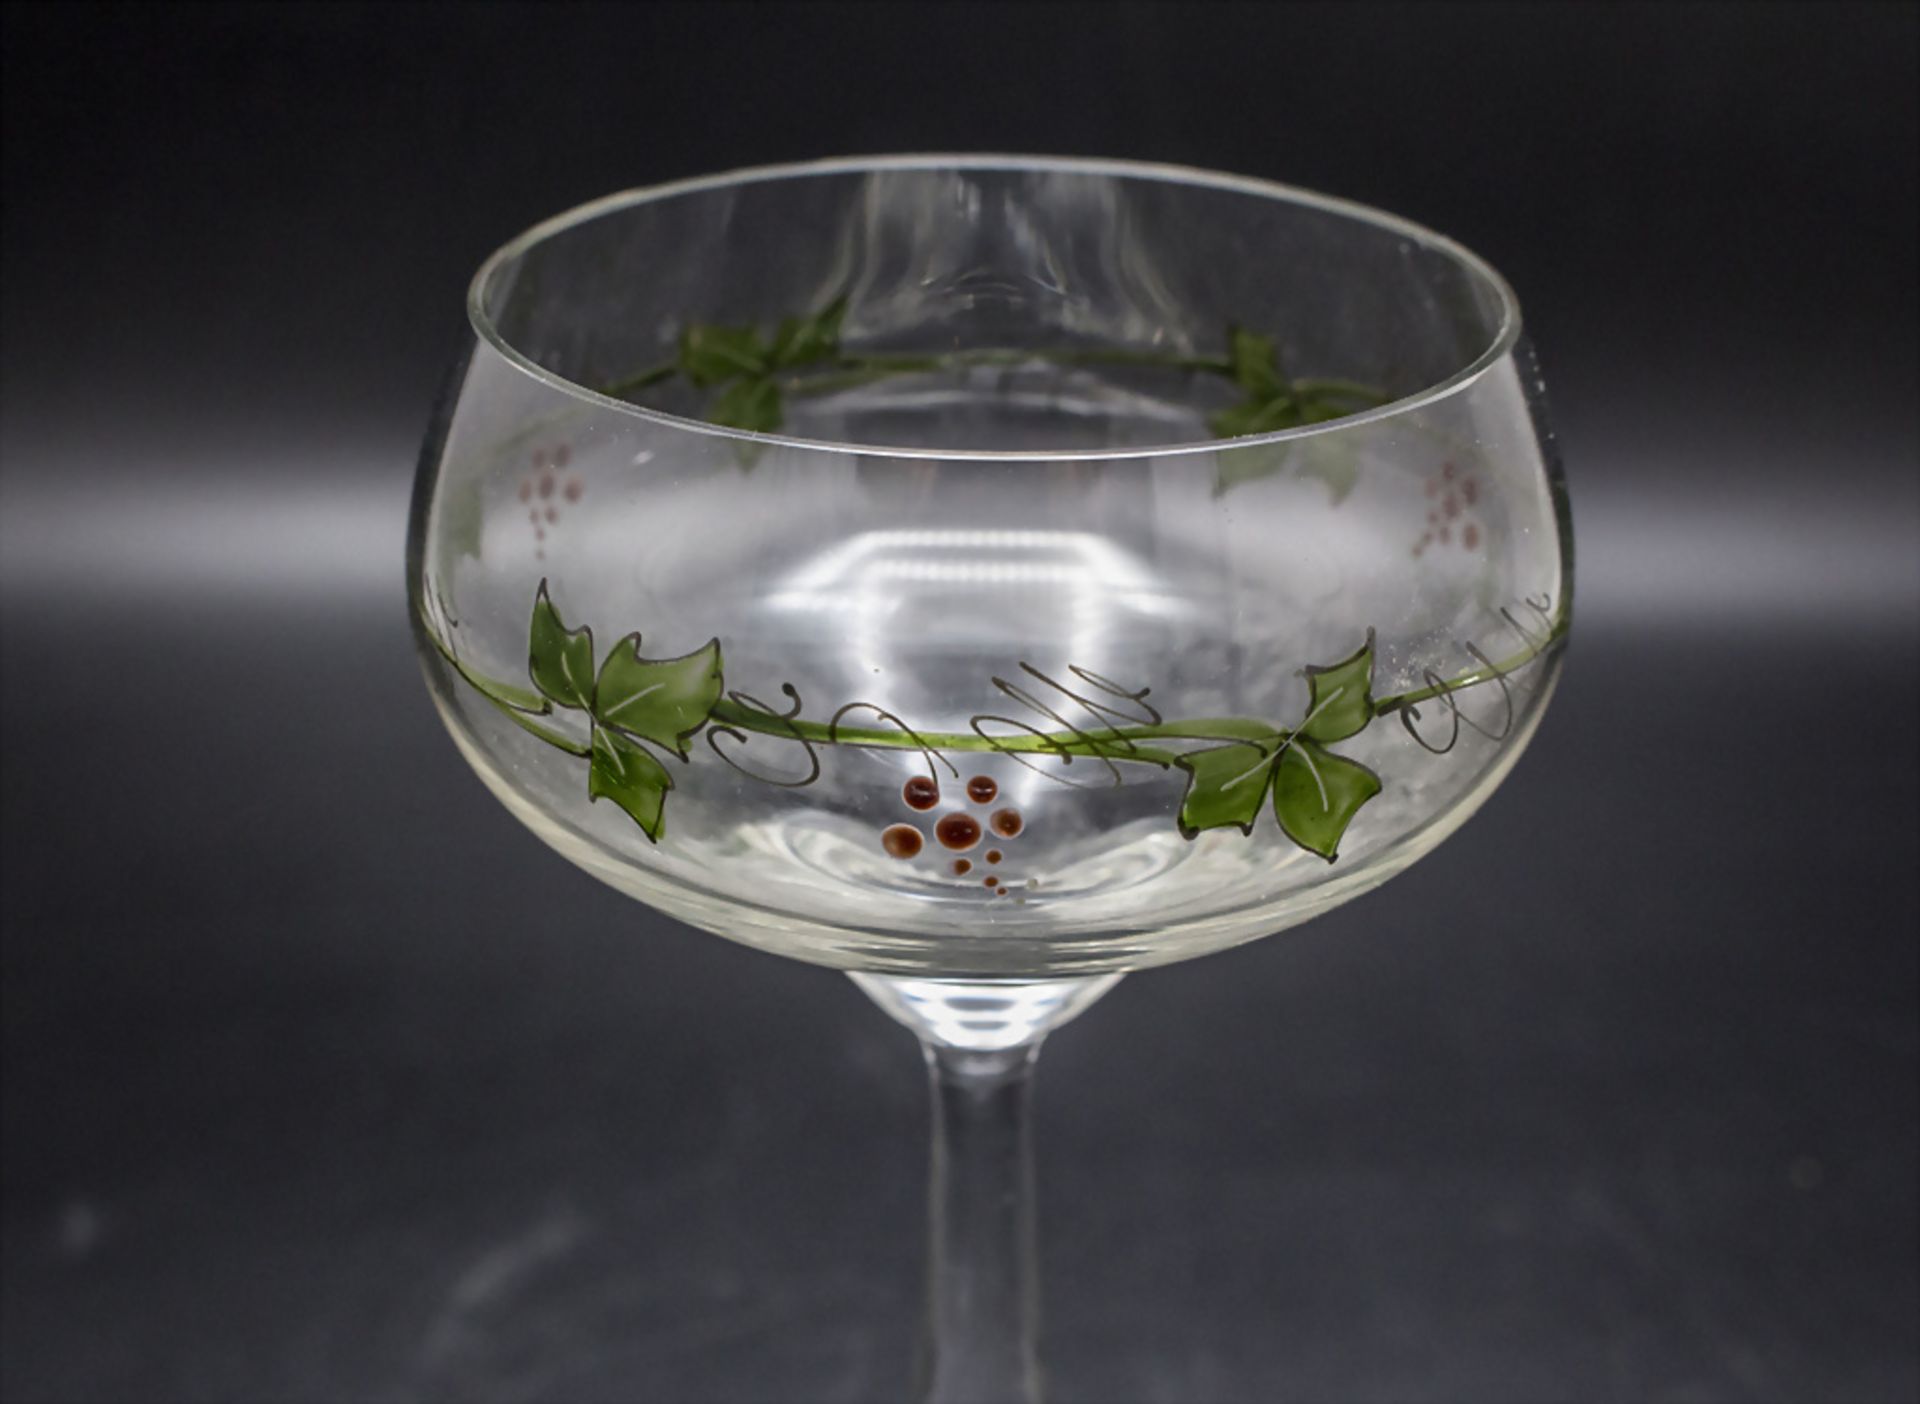 Paar Jugendstil Weingläser / 2 Art Nouveau wine glasses with vine tendrils and grapes, ... - Bild 2 aus 3